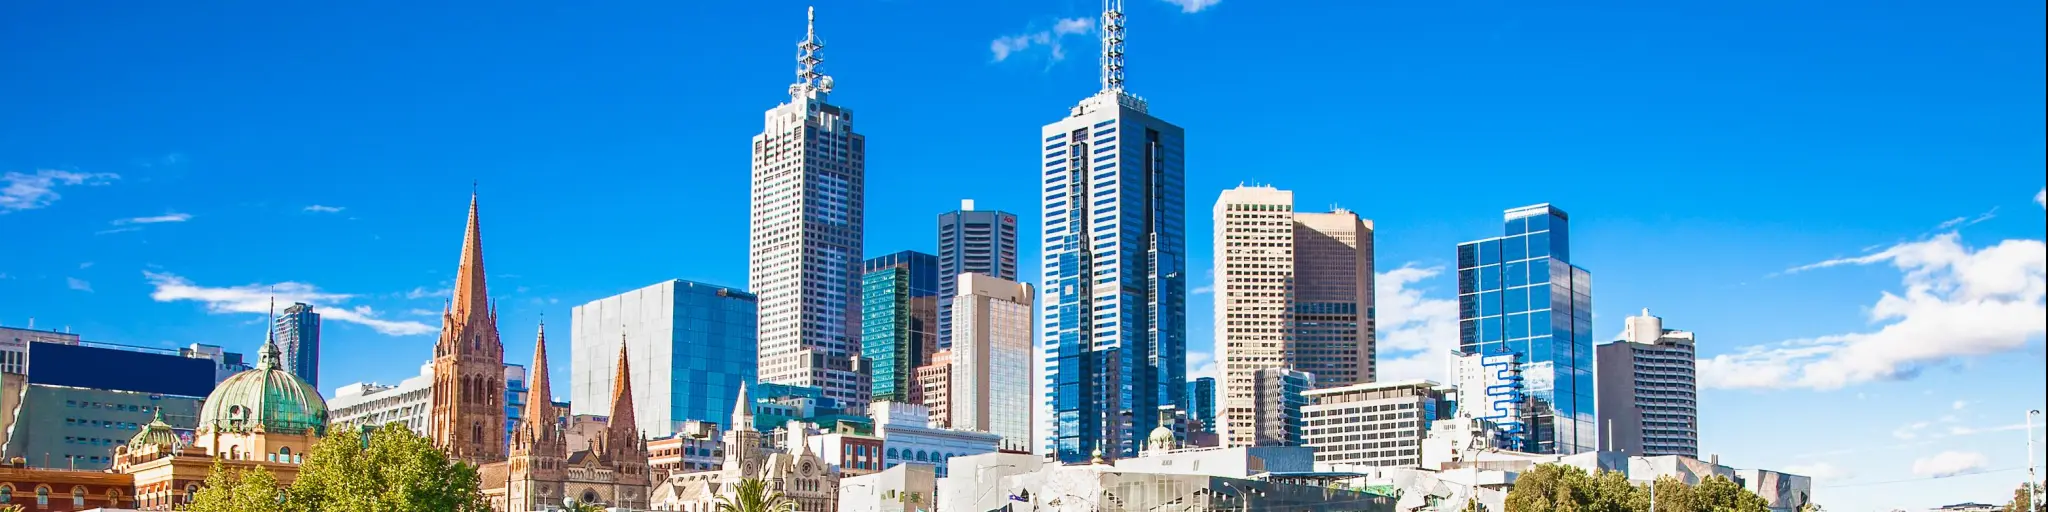 Melbourne skyline looking towards Flinders Street Station. 